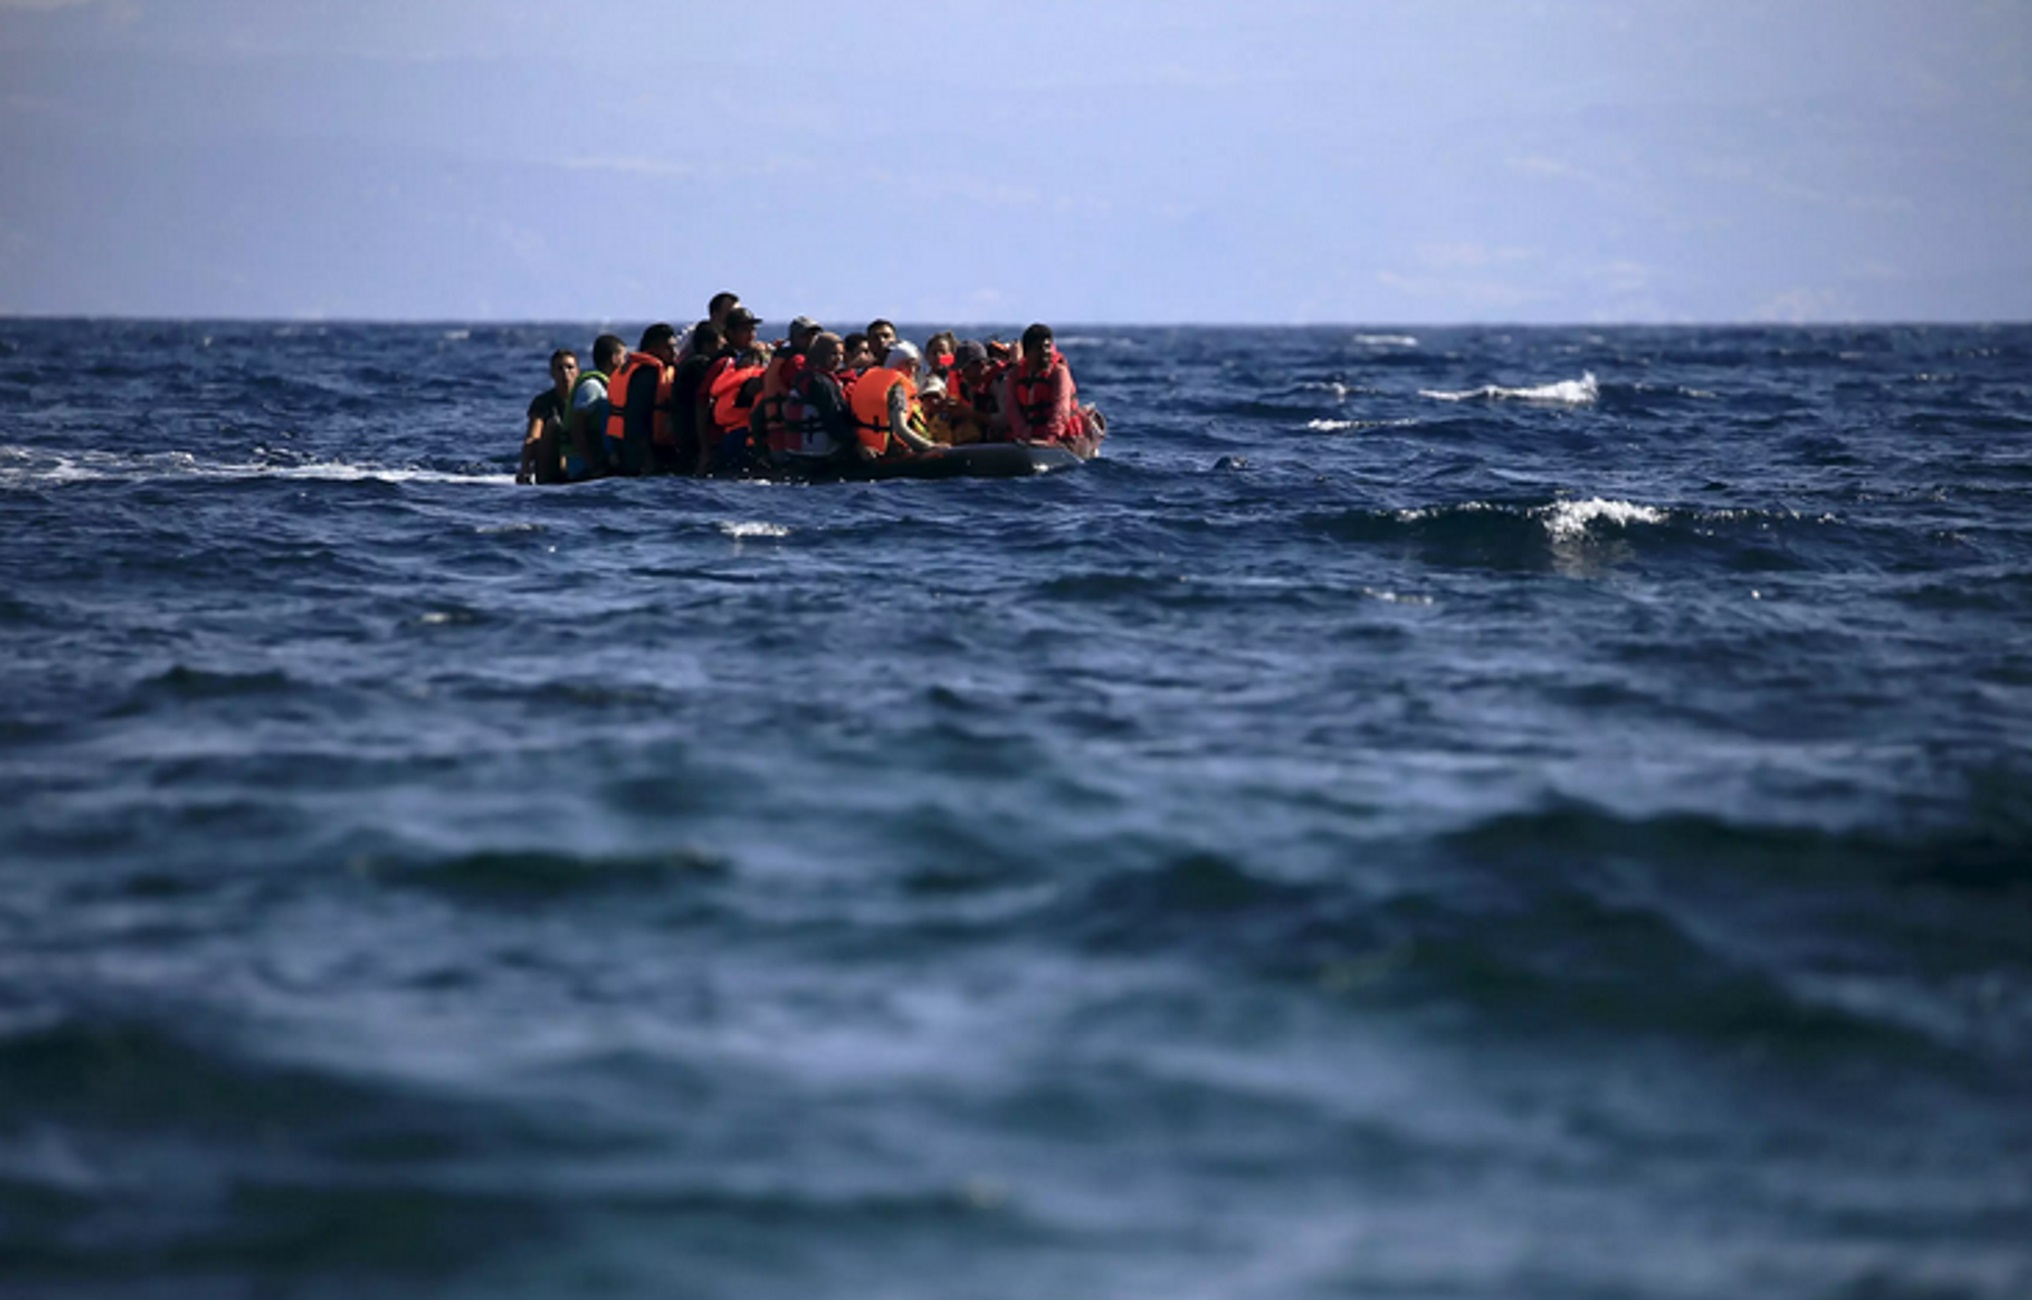 Ευρωπαϊκό Κοινοβούλιο: Τα 10 μέτρα που προβλέπει το Σύμφωνο για τη Μετανάστευση και το Άσυλο